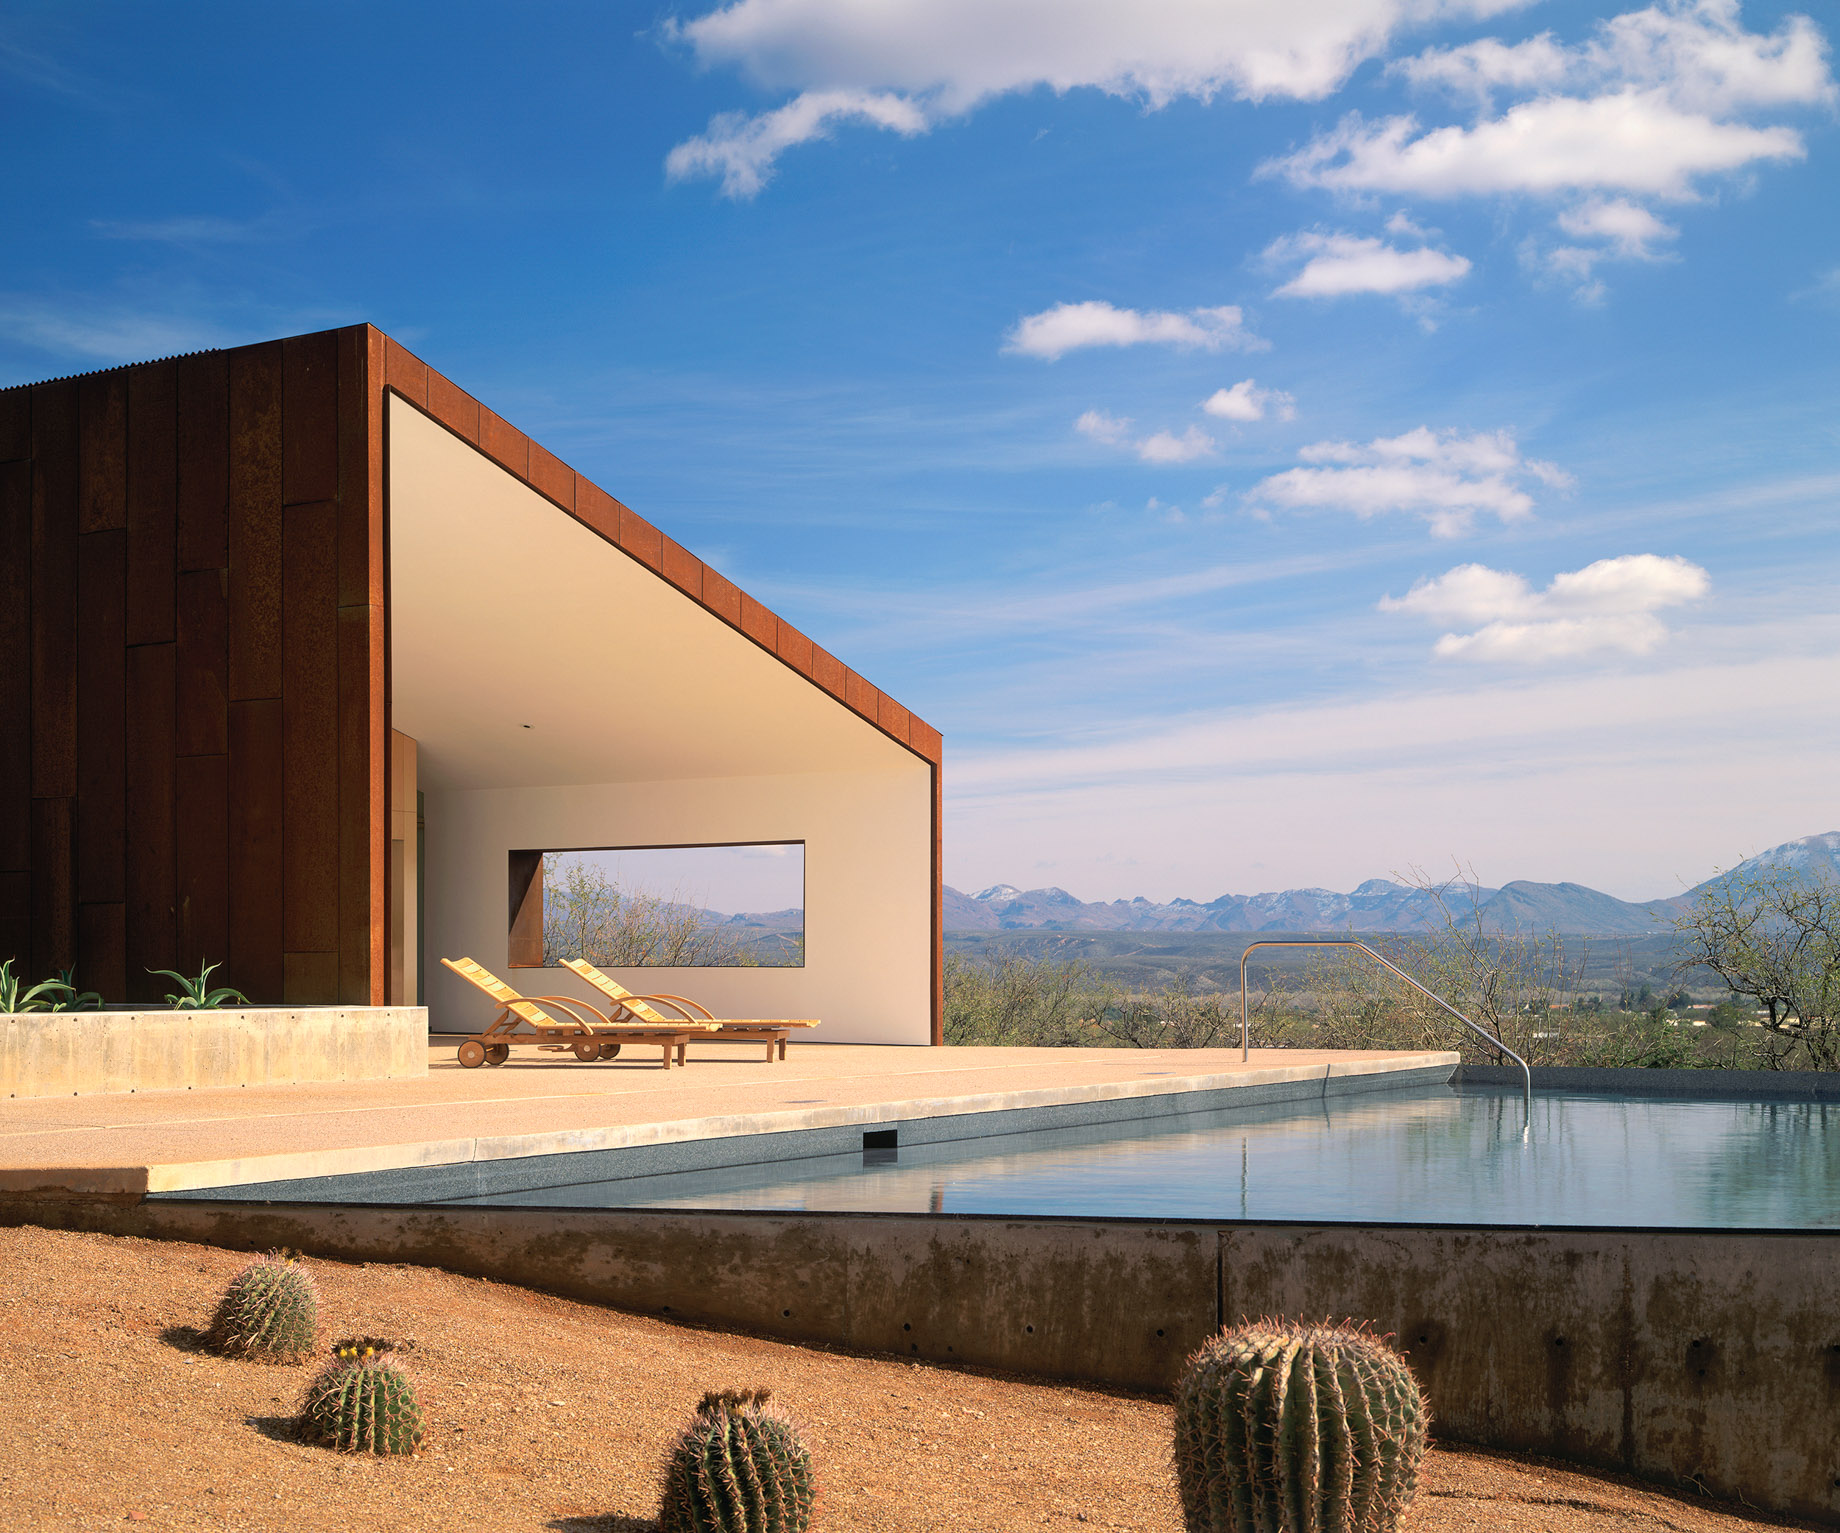 Tyler House Sonoran Desert Modernist Residence – Tubac, AZ, USA – 1